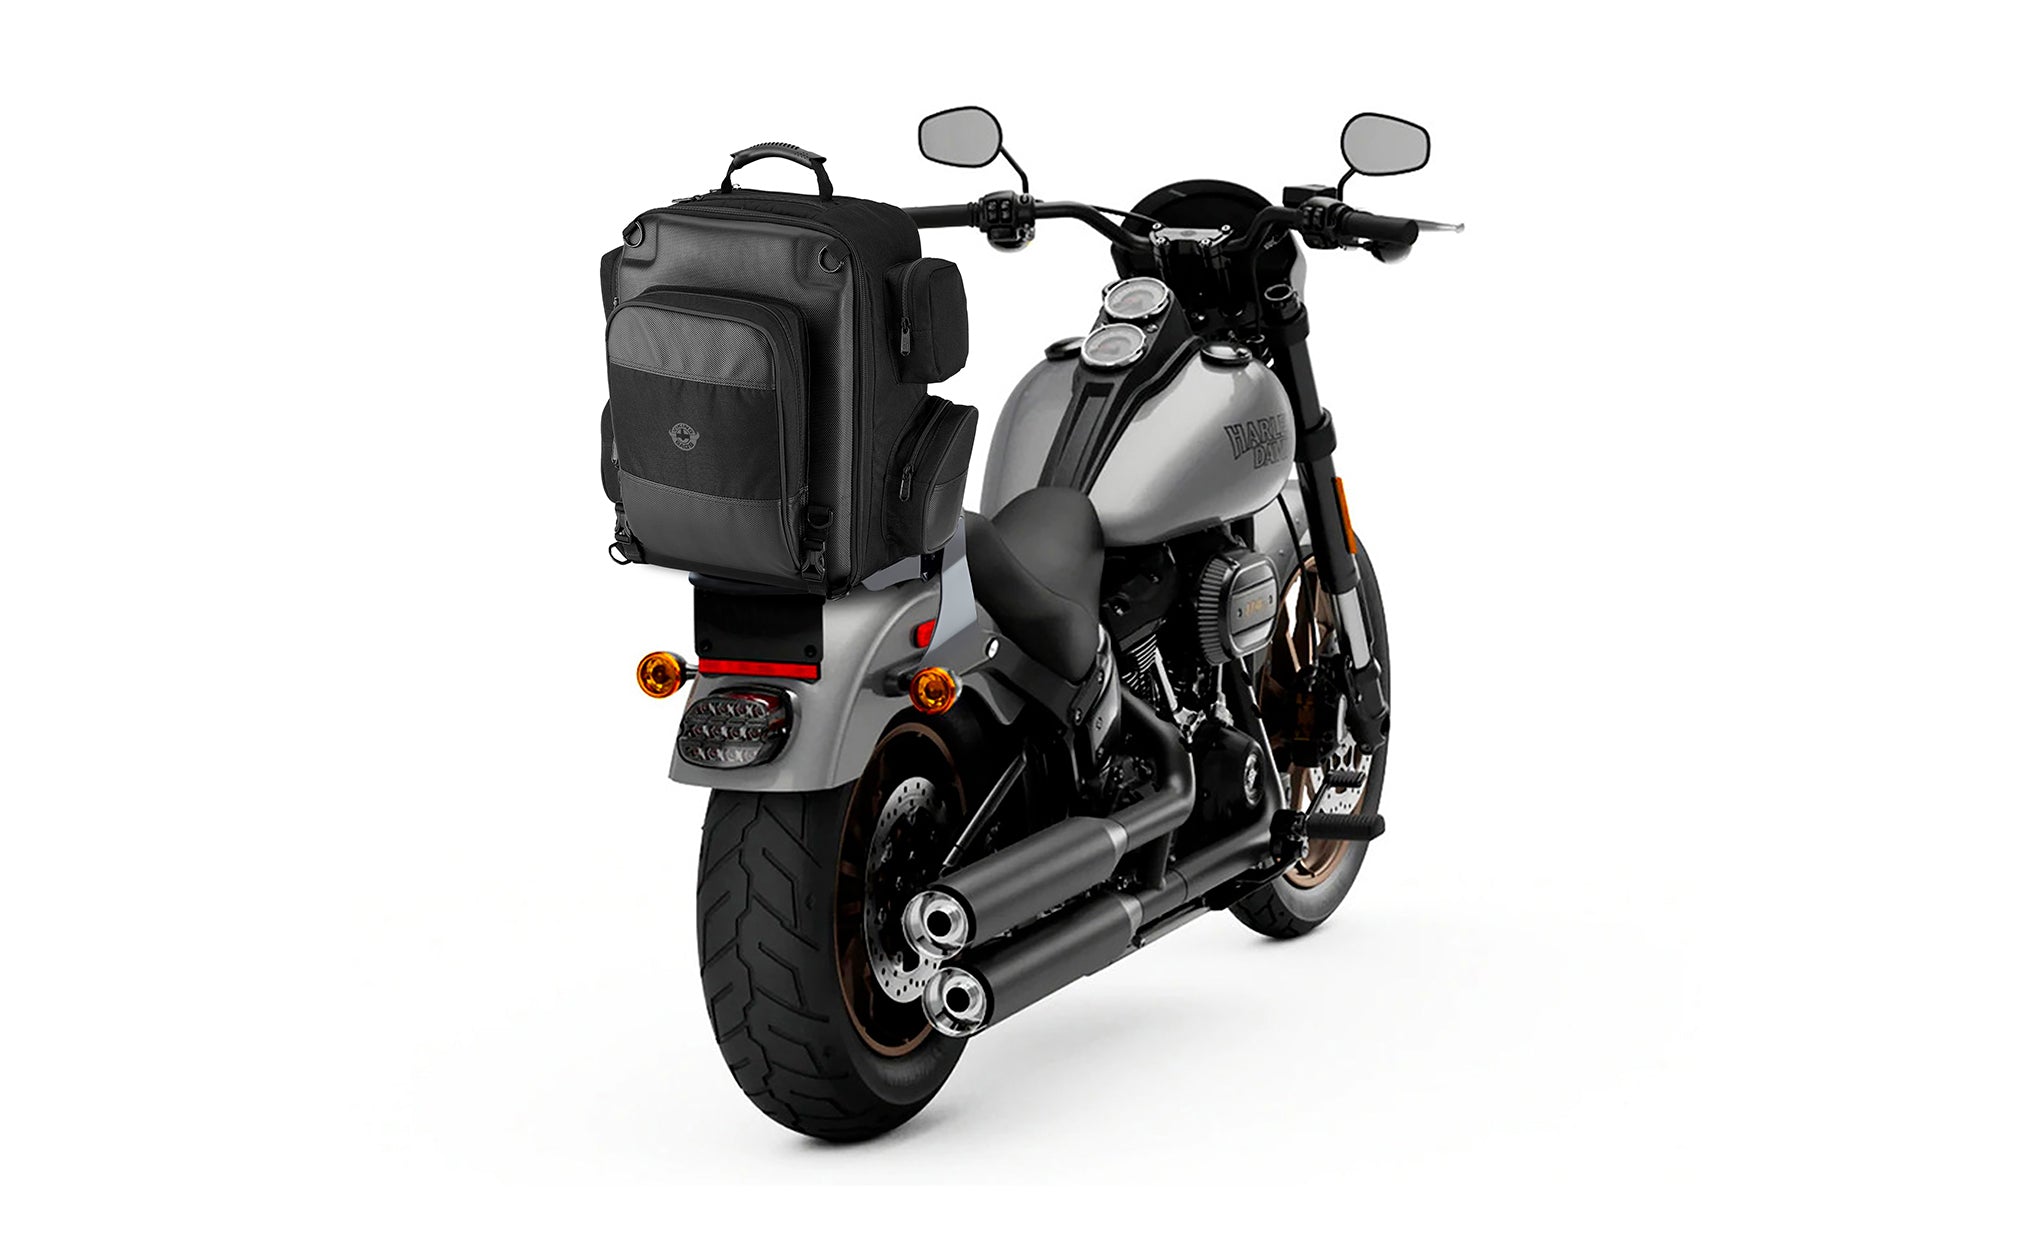 Viking Voyage Large Suzuki Motorcycle Sissy Bar Backpack Bag on Bike View @expand